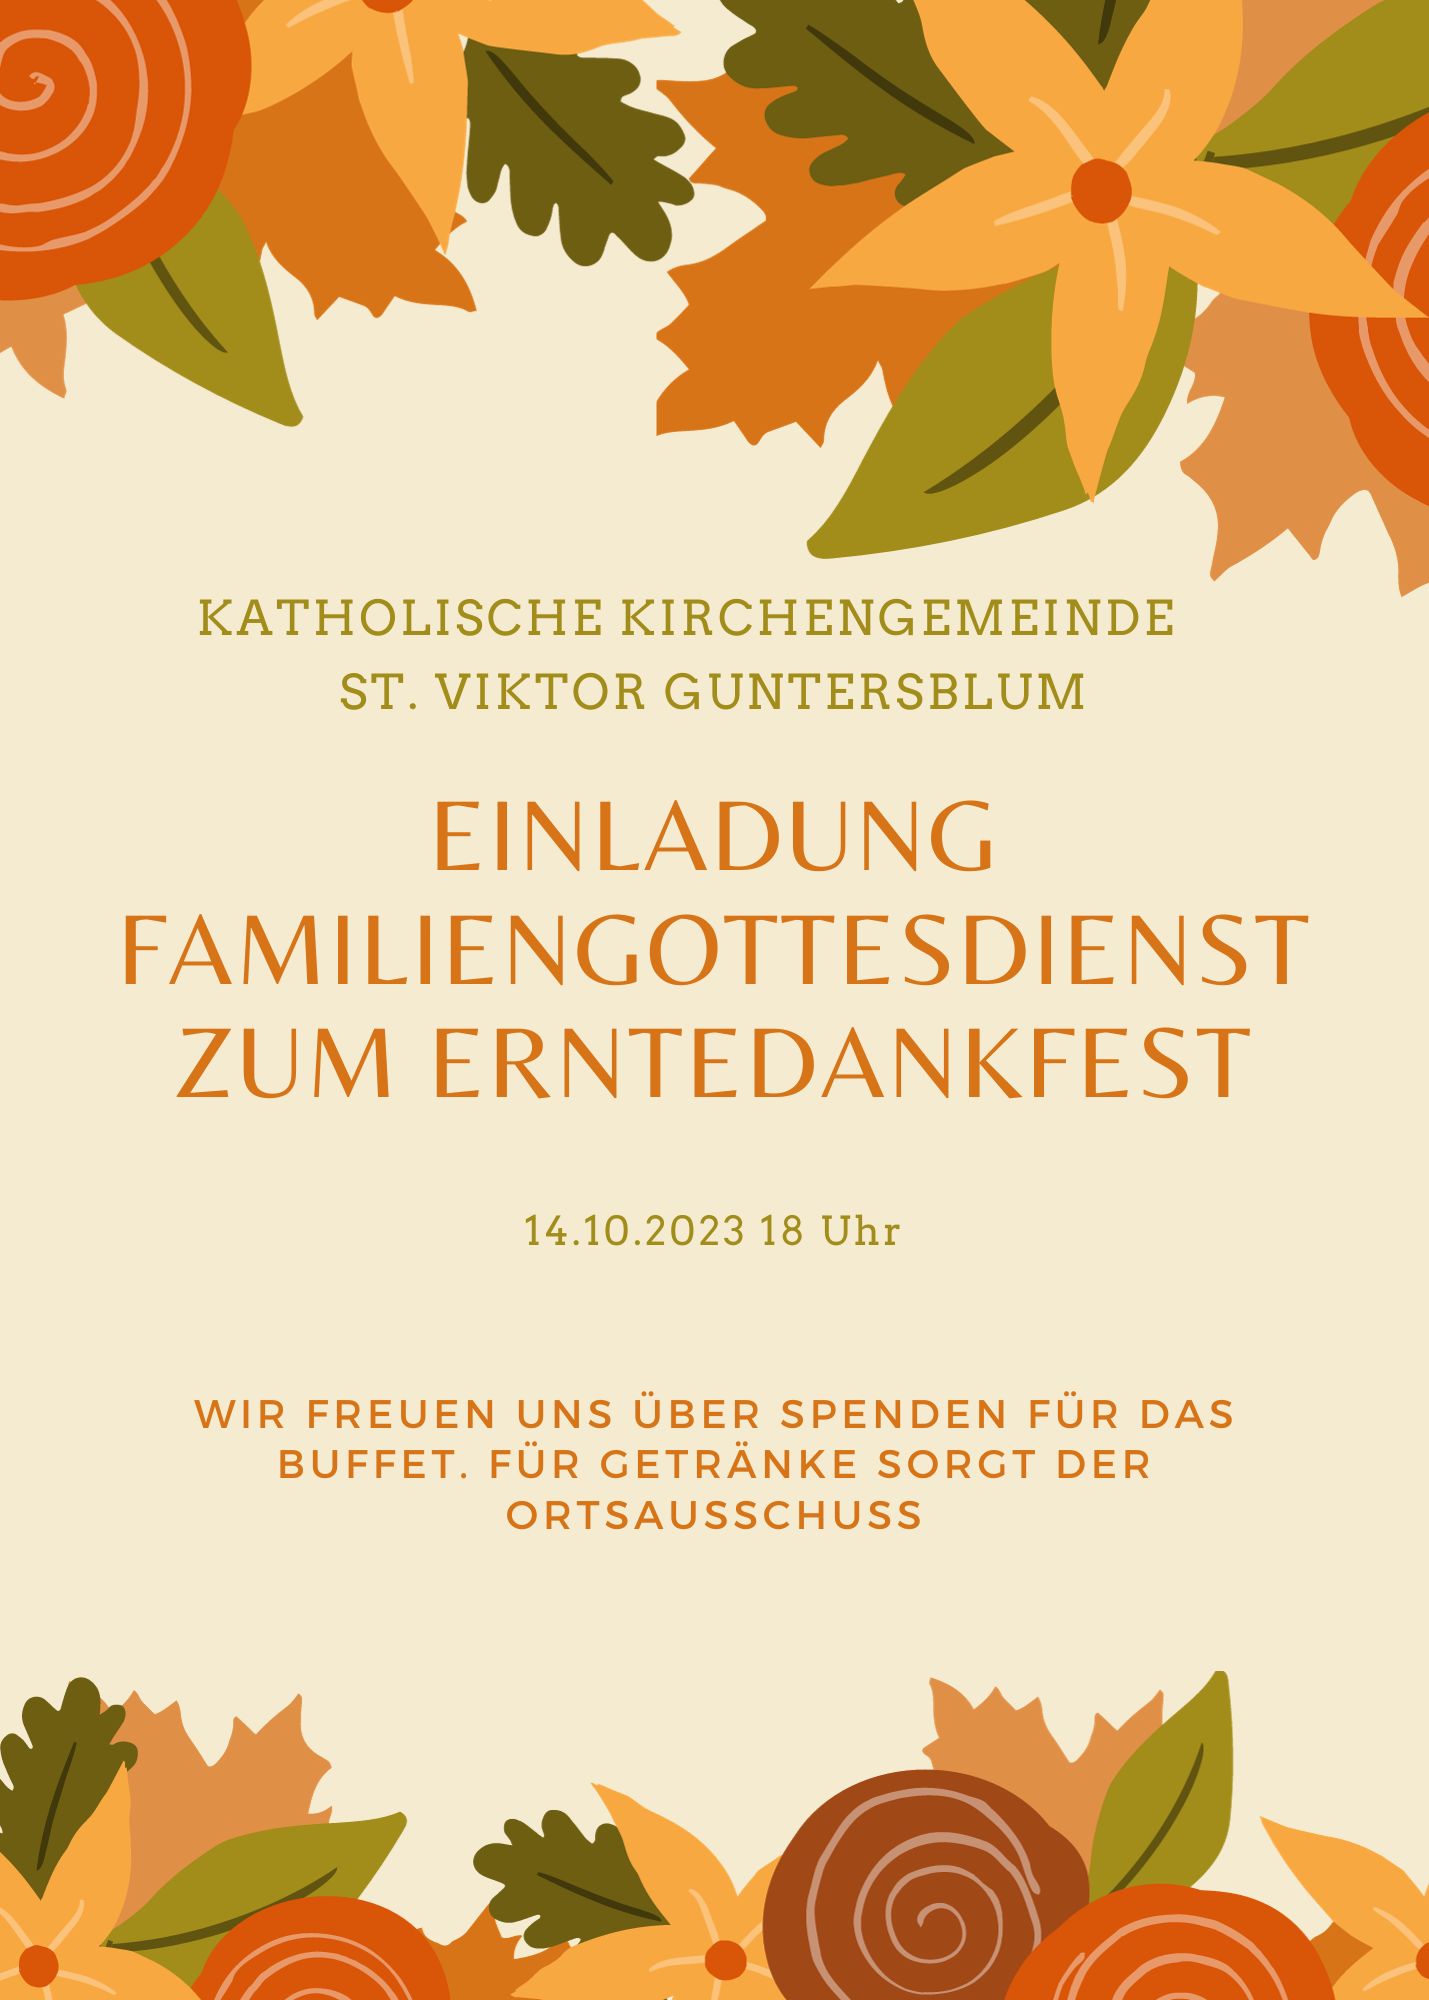 Erntedankfest 14.10.2023 (c) Kath. Kirchengemeinde St. Viktor Guntersblum